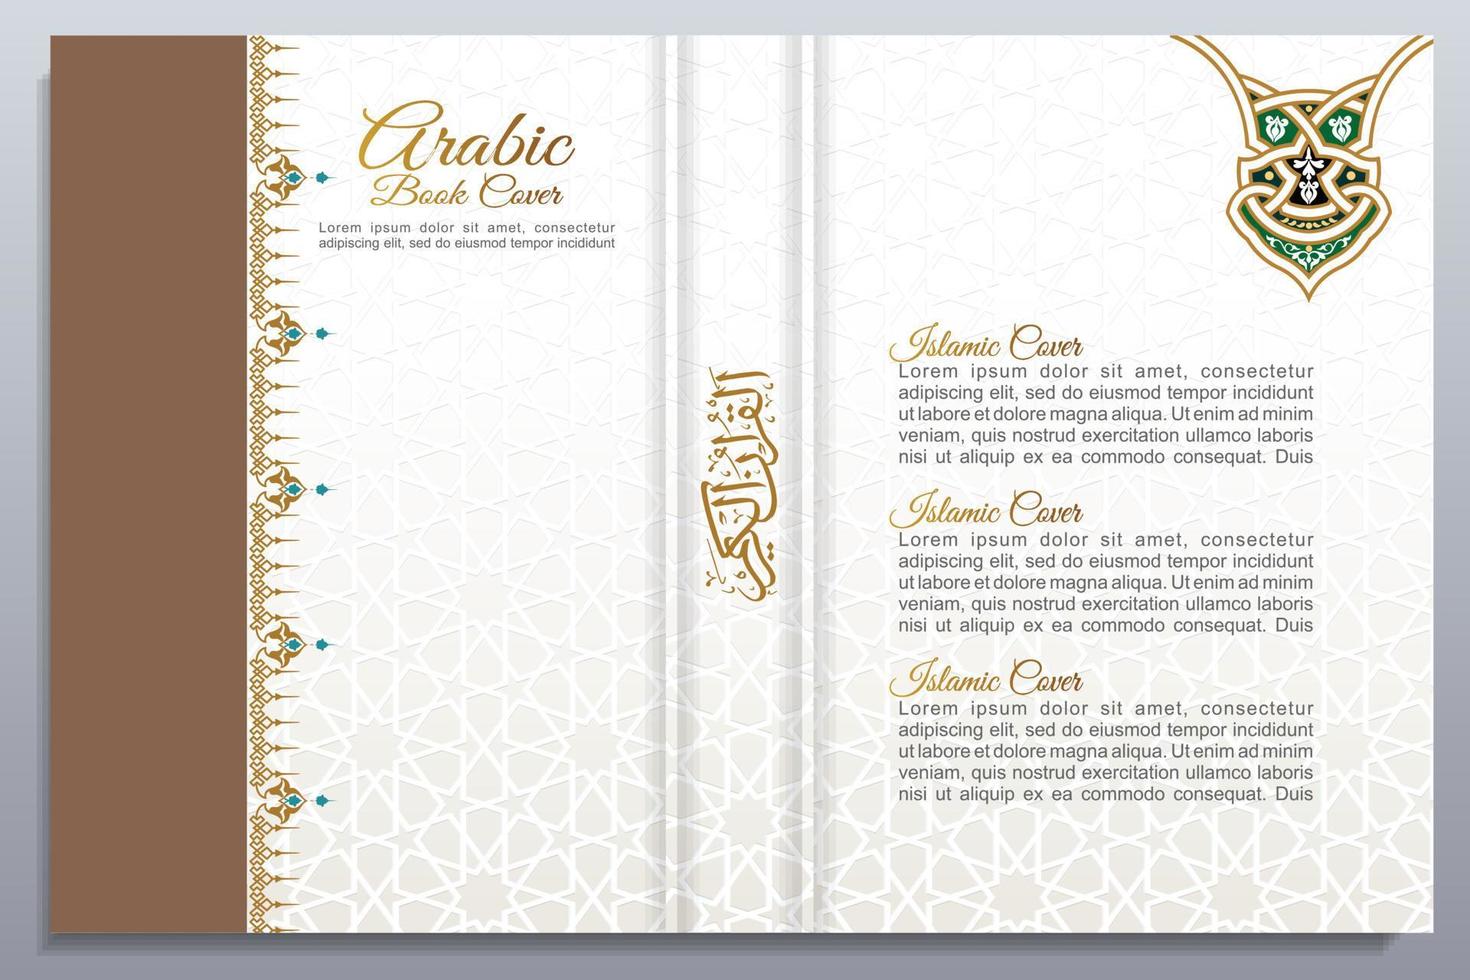 Arabisch islamisch Buch Startseite Design vektor